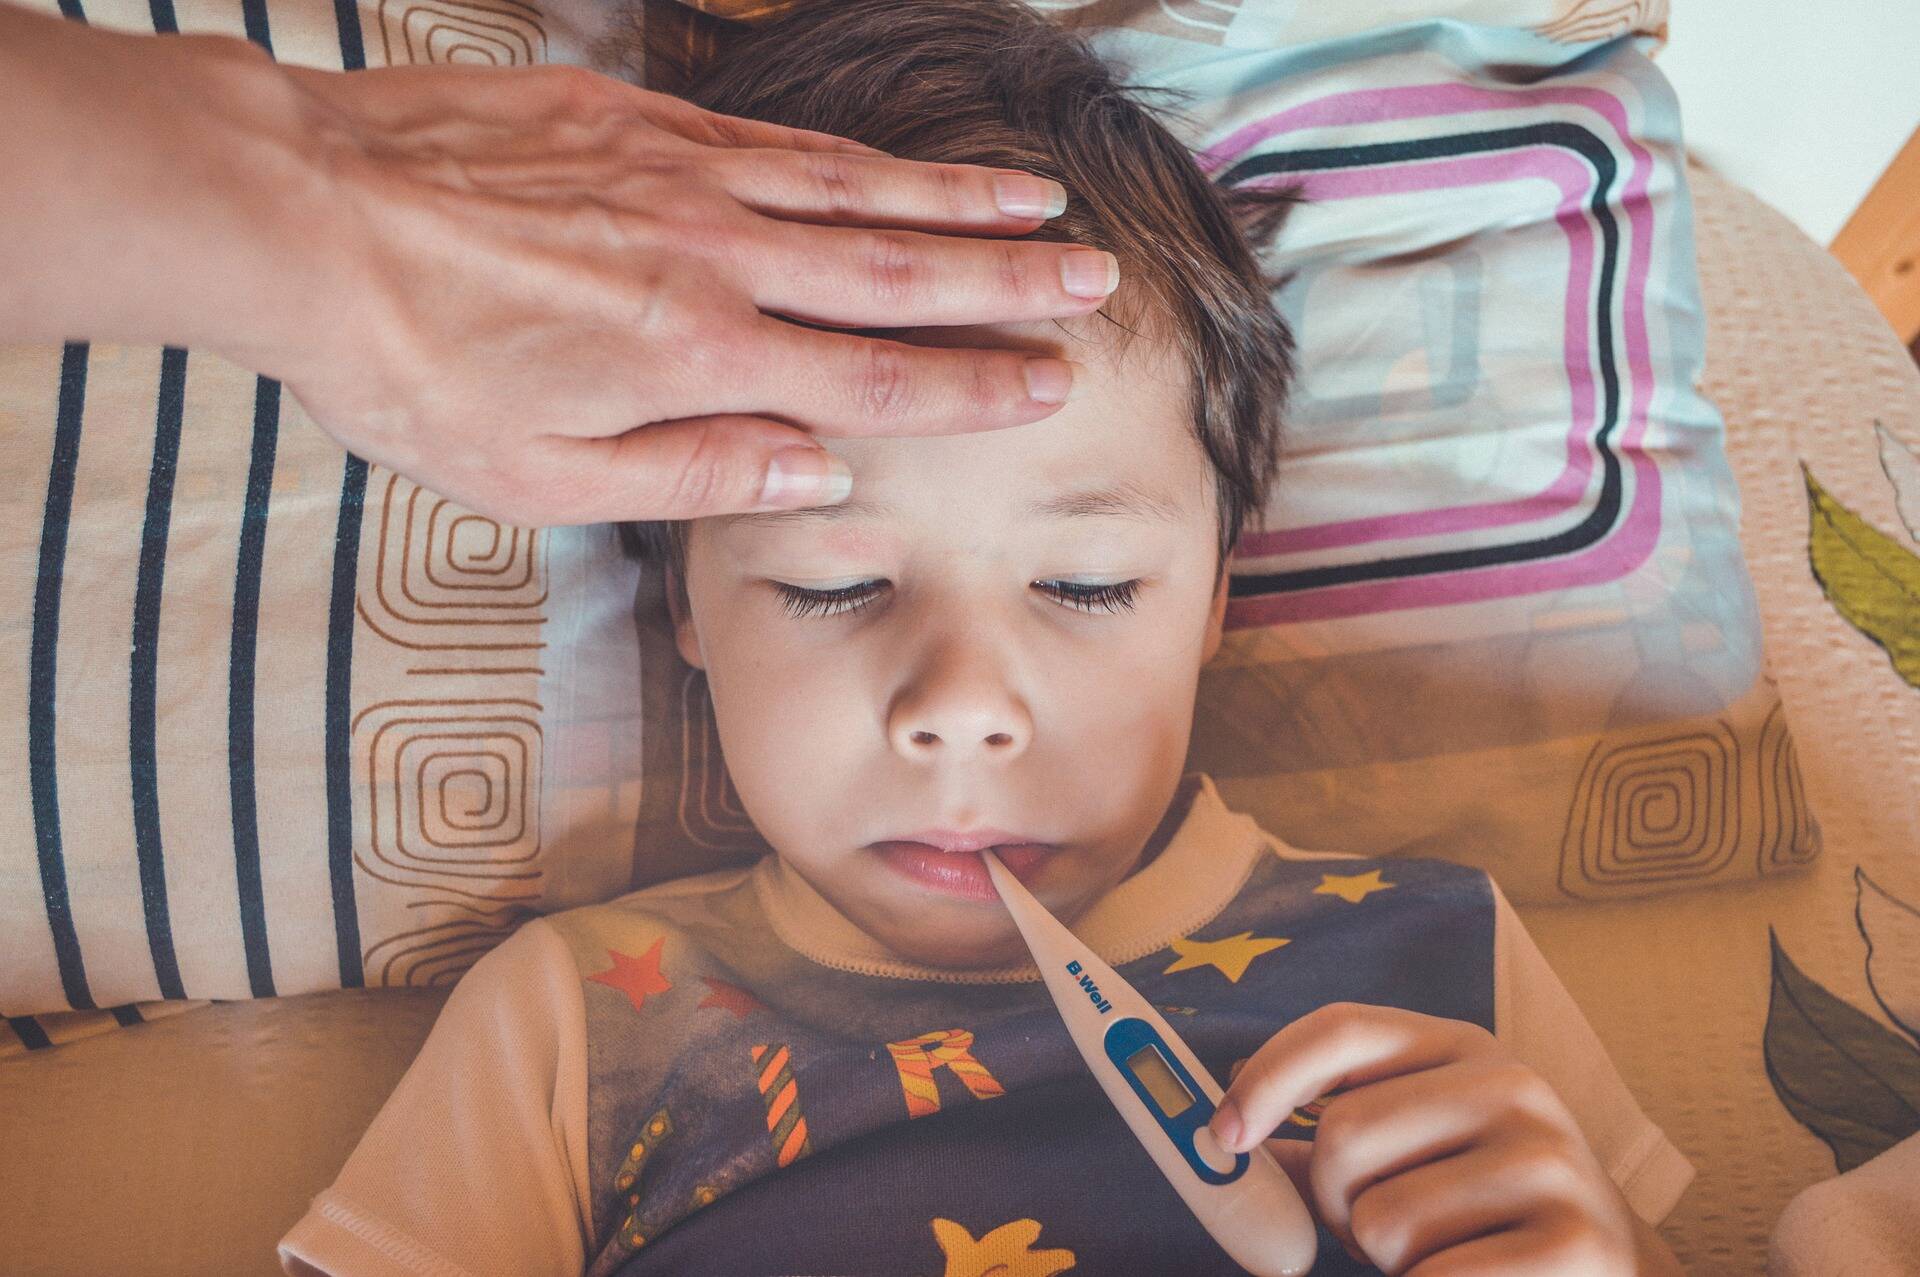 Diarreia e vômito podem ter ligação a casos graves de covid-19 em crianças